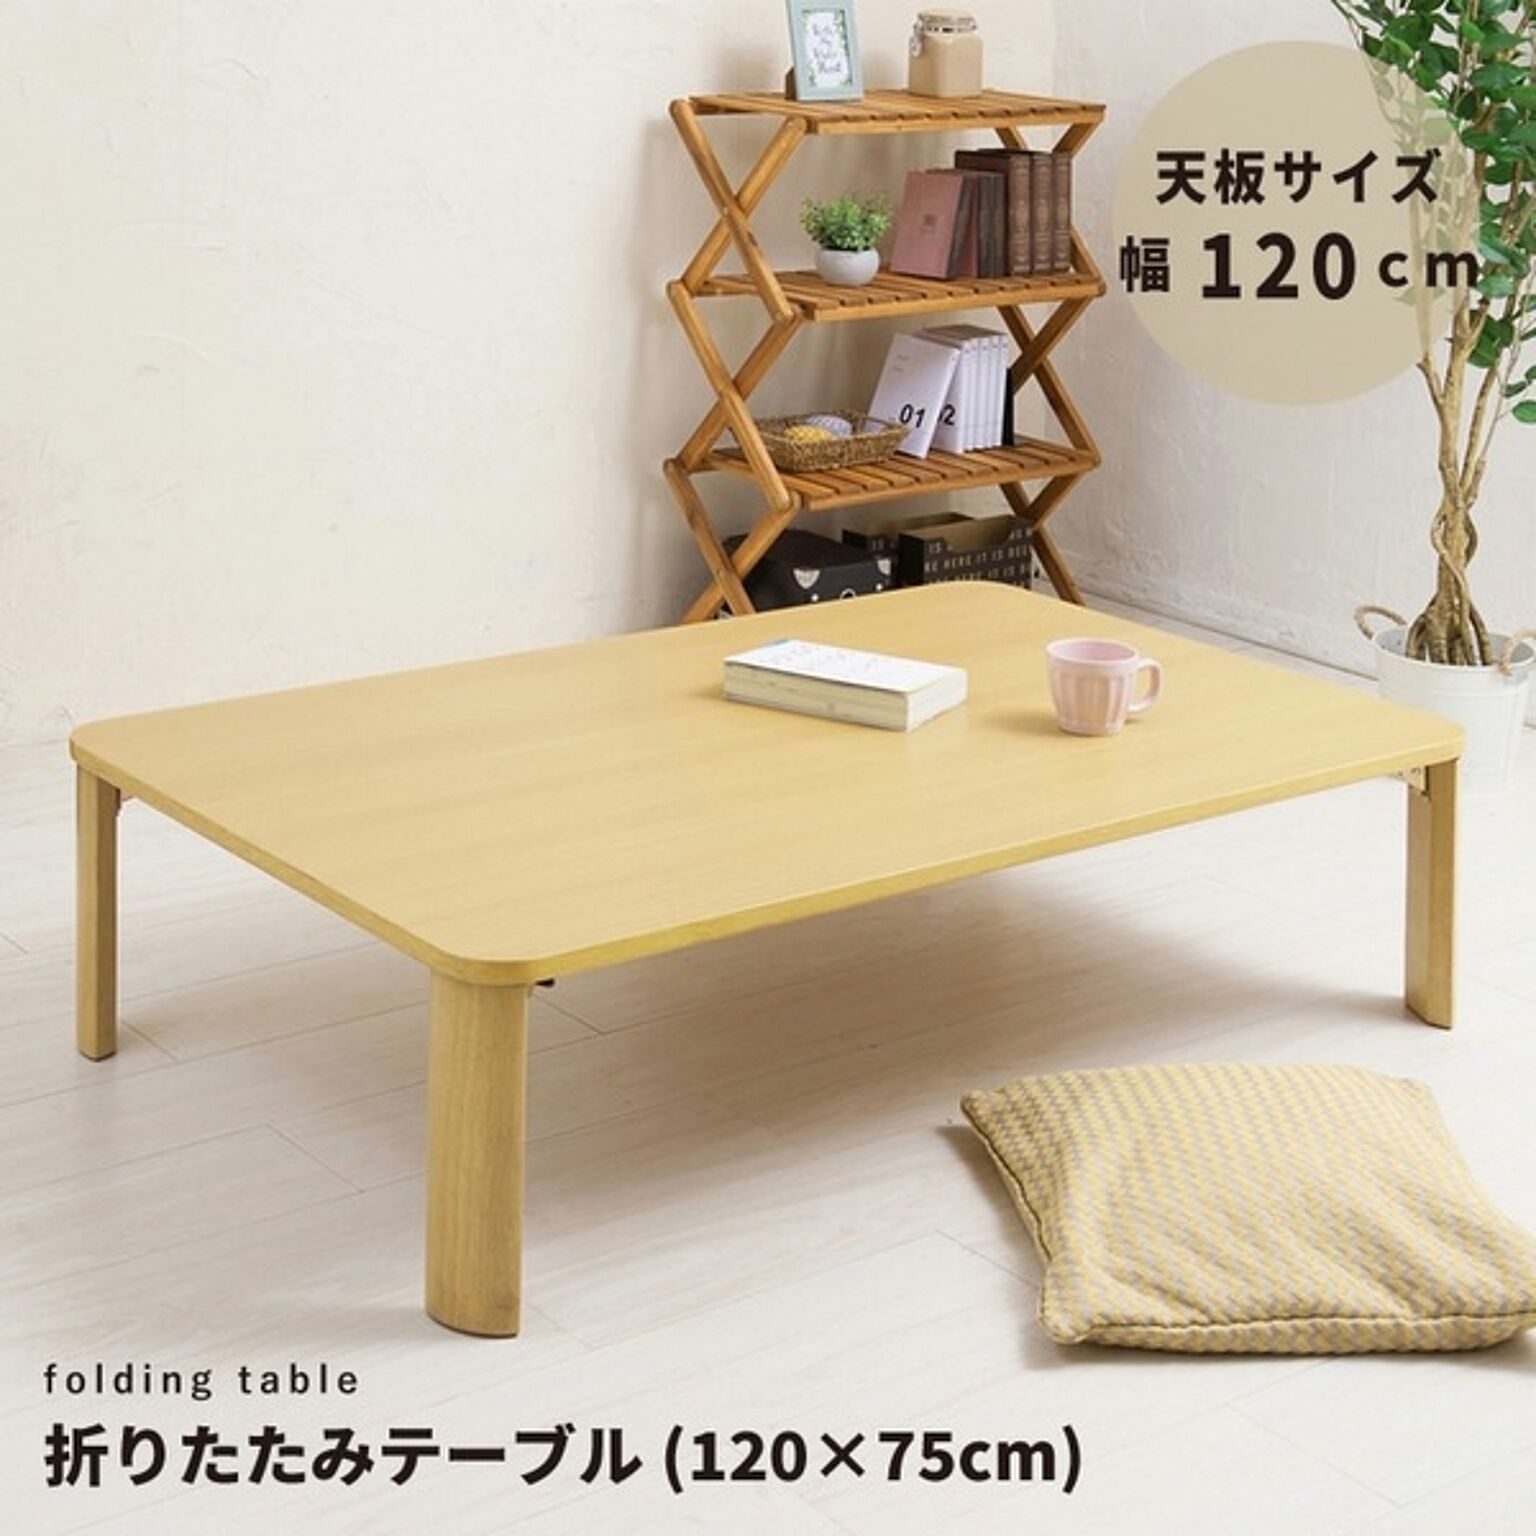 永井興産 折りたたみテーブル 120×75cm 木製 ナチュラル NK-0127